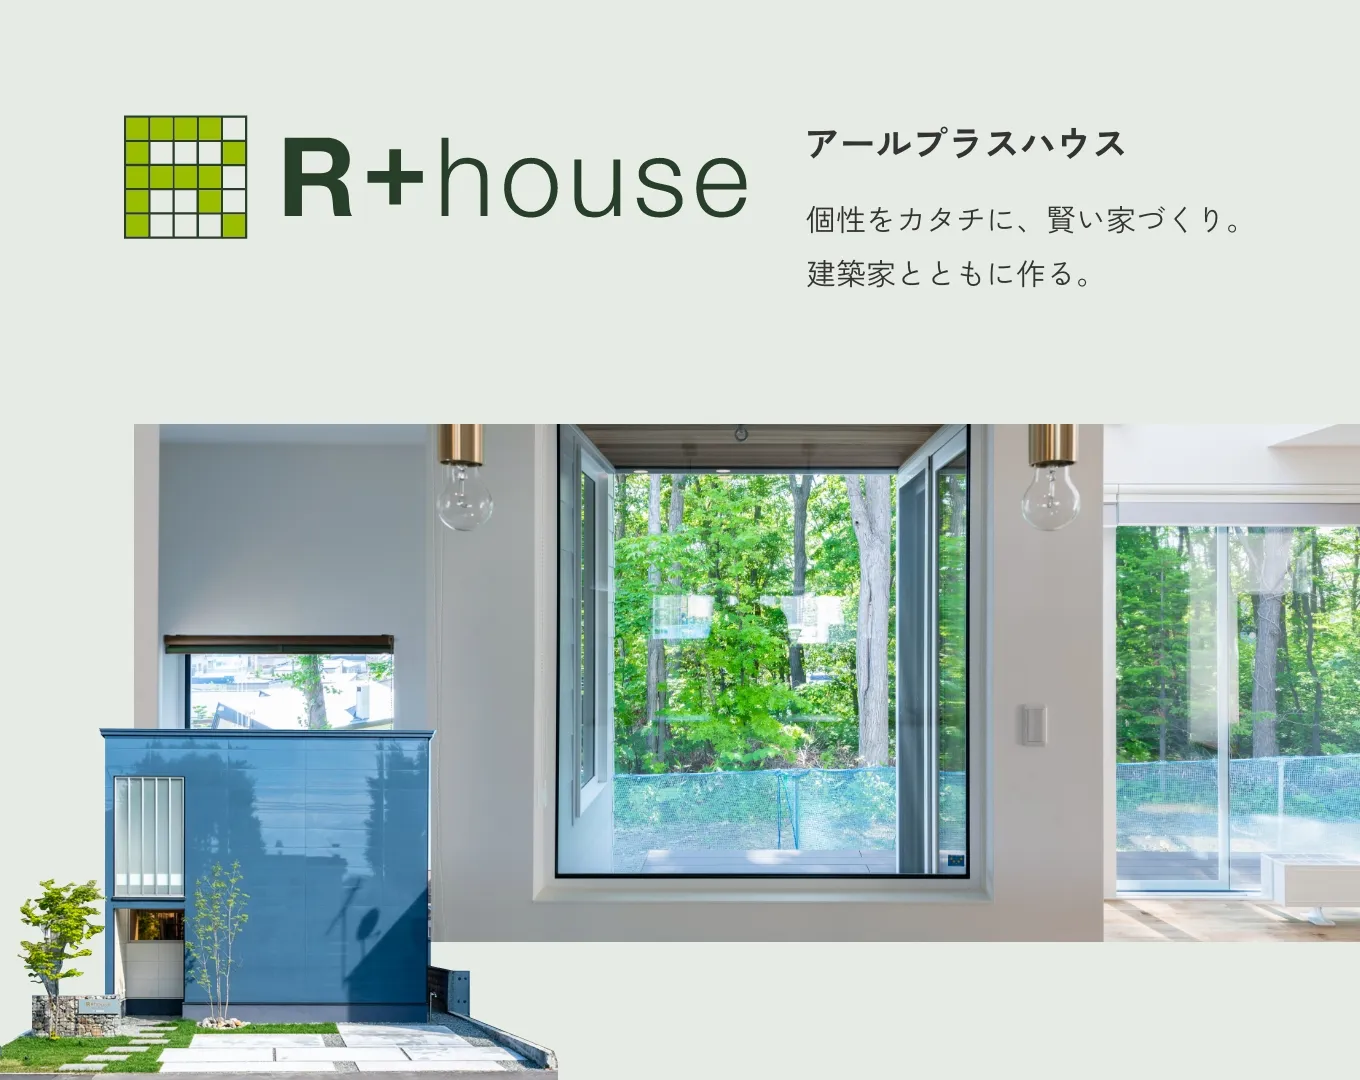 竹内建設の住宅ラインナップ「R+house」